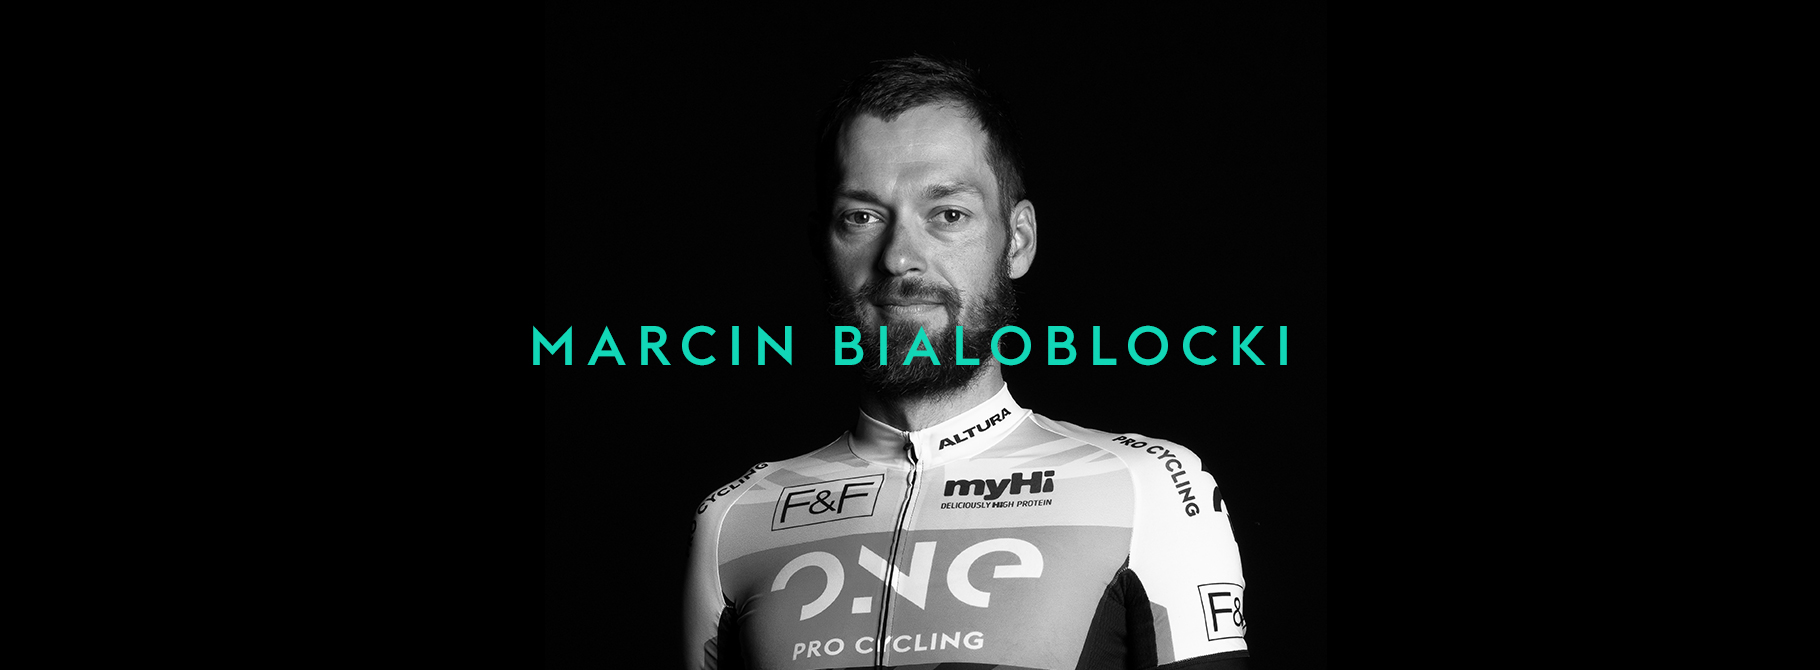 Marcin-Bialoblocki_używa_pomiaru_mocy_InfoCrank_Kozzak_Bikes_dystrybutor